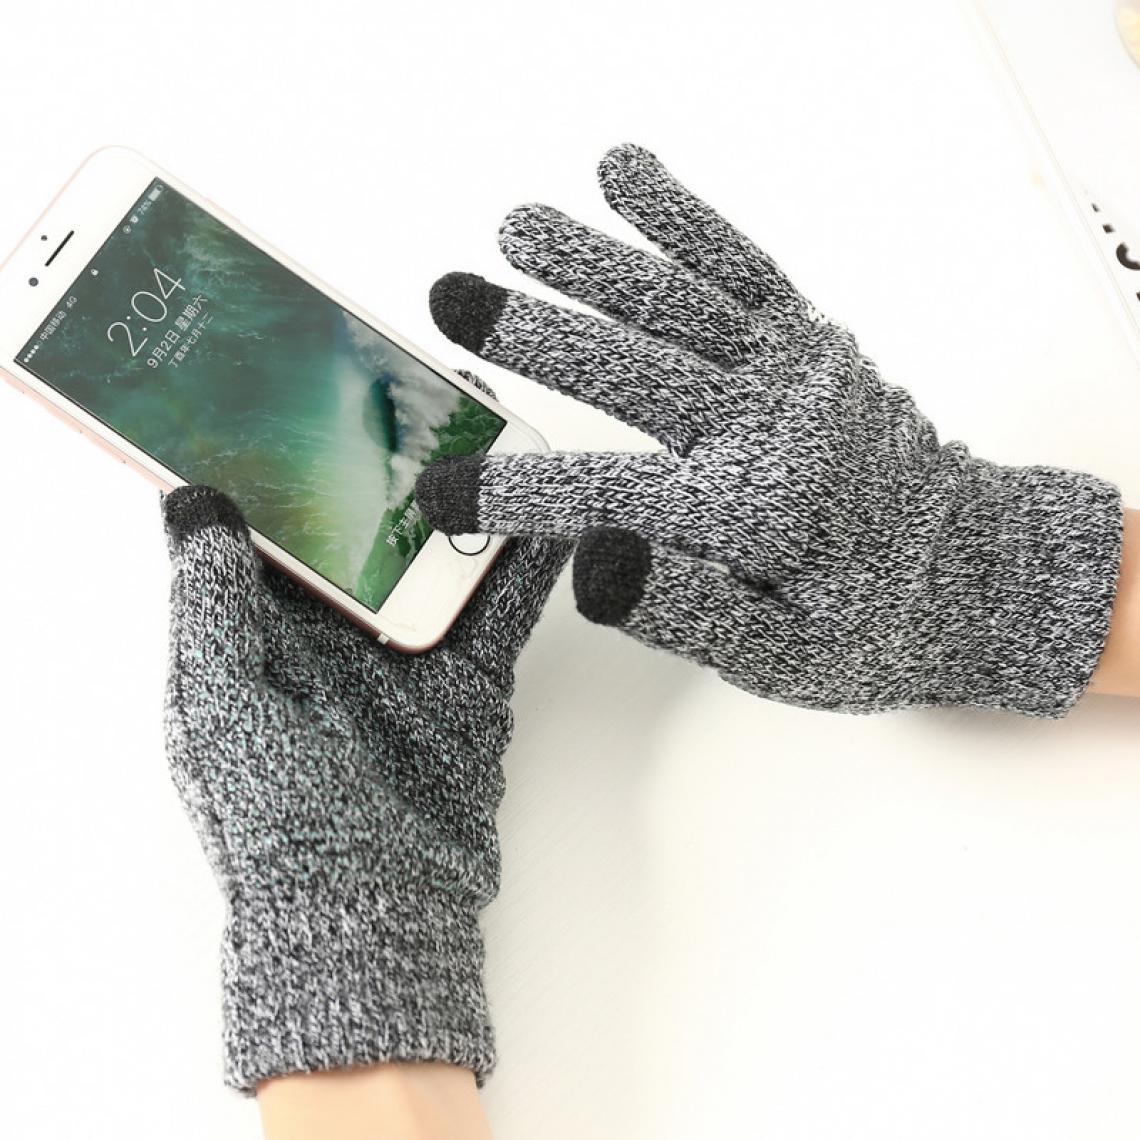 Shot - Gants Homme tactiles pour SONY Xperia 1 II Smartphone Taille M 3 doigts Hiver (NOIR) - Autres accessoires smartphone